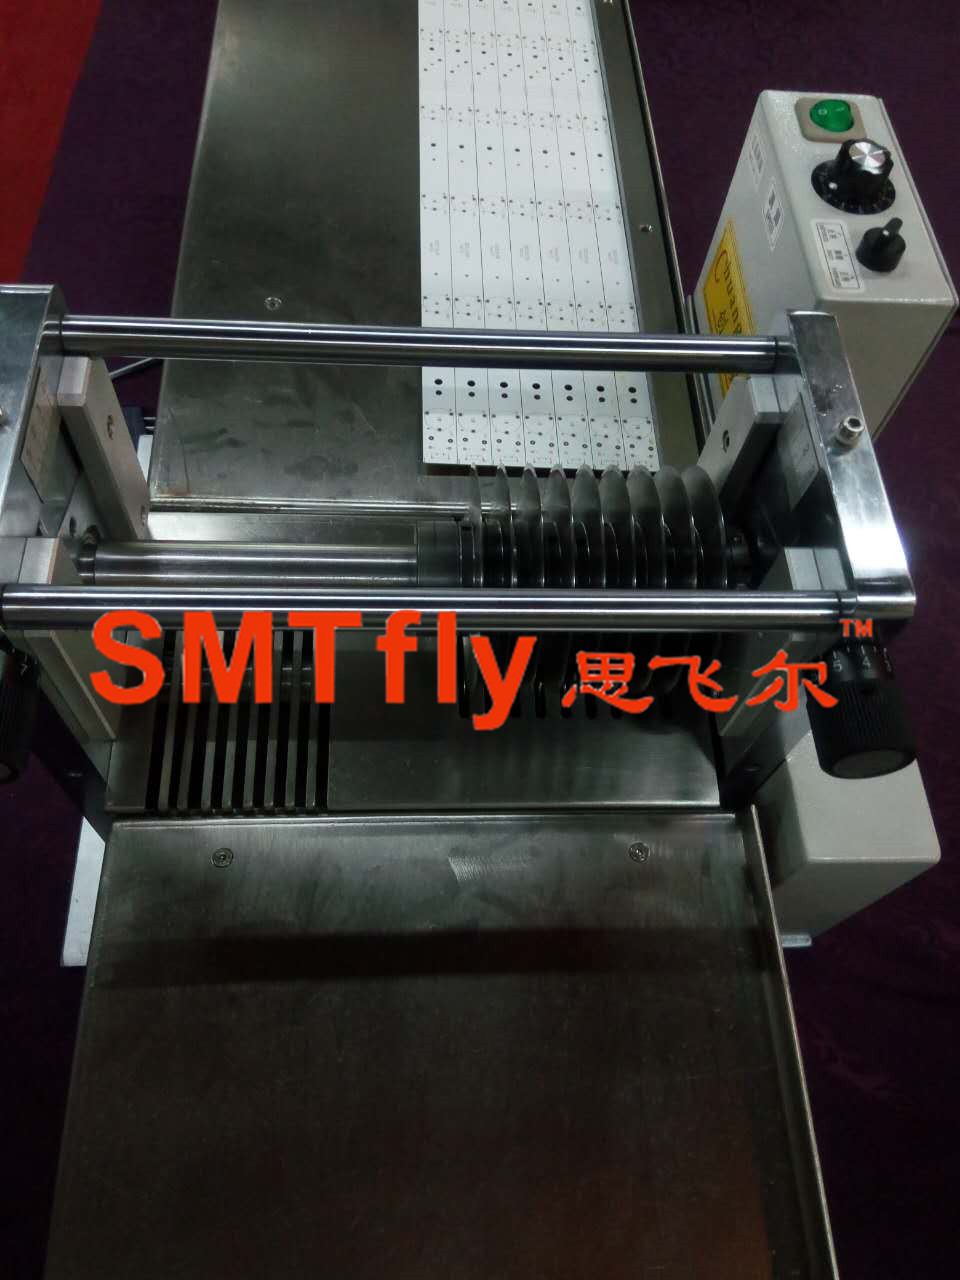 High Efficiency CNC Cutting Machine,SMTfly-1SN